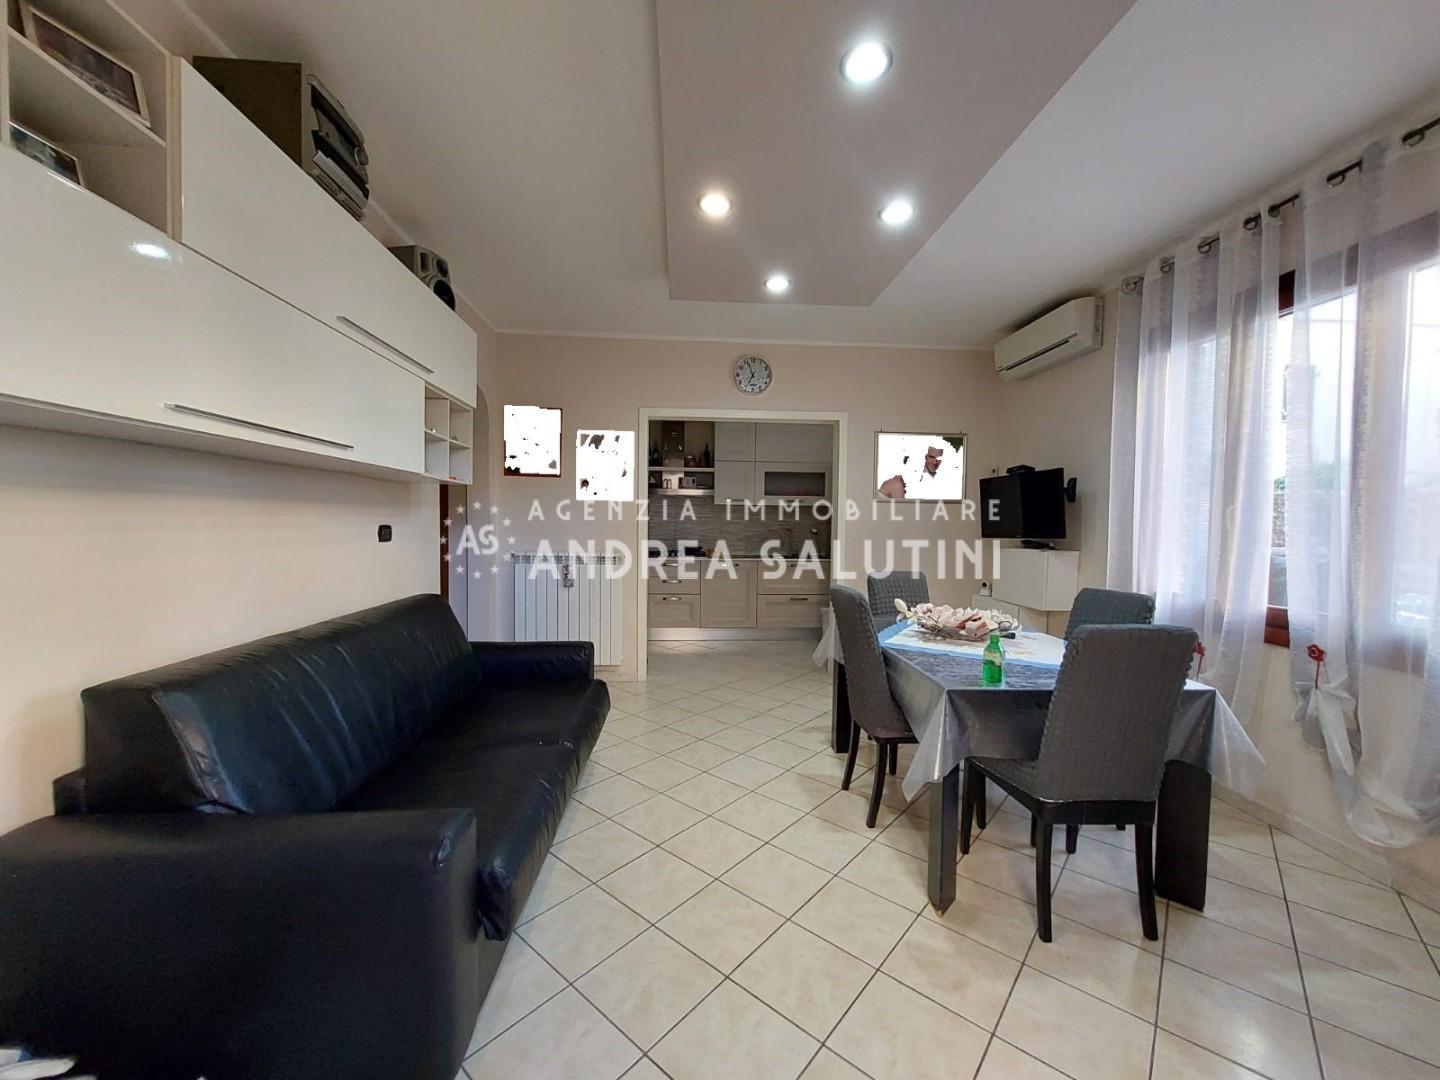 Appartamento in vendita a Montopoli in Val d'Arno, 3 locali, prezzo € 169.000 | PortaleAgenzieImmobiliari.it